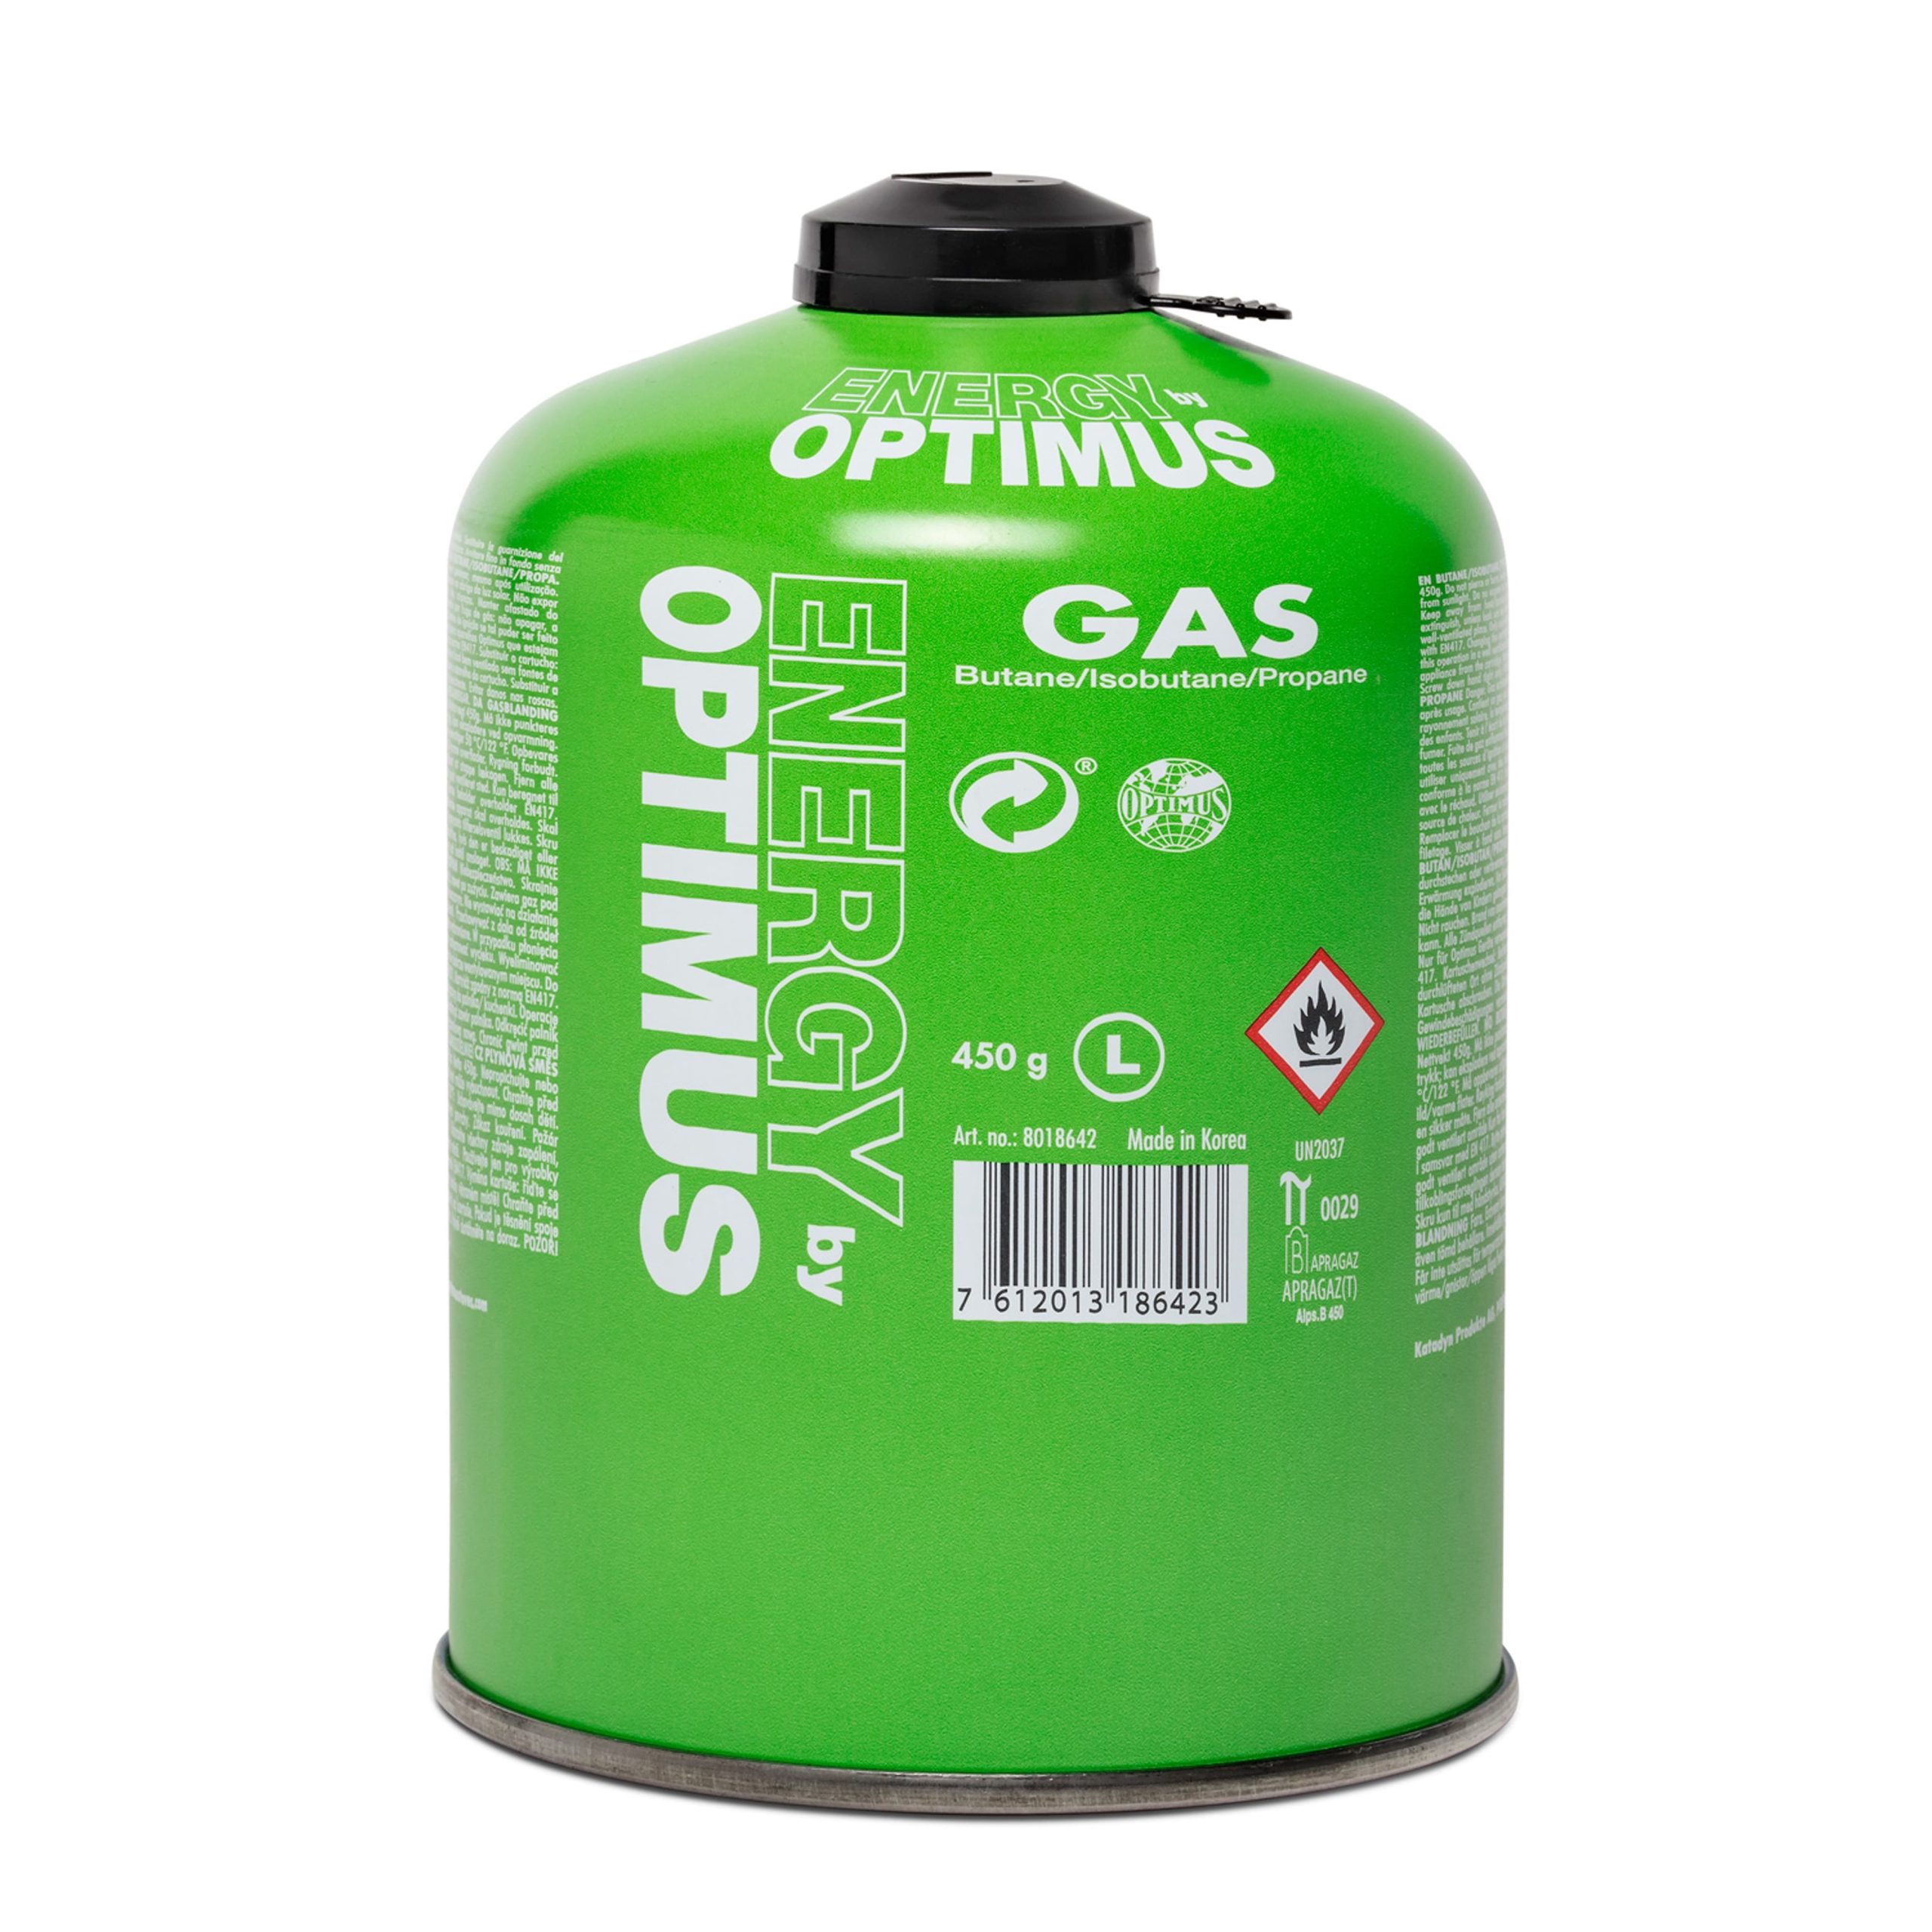 Optimus – Gaskartusche – 450g